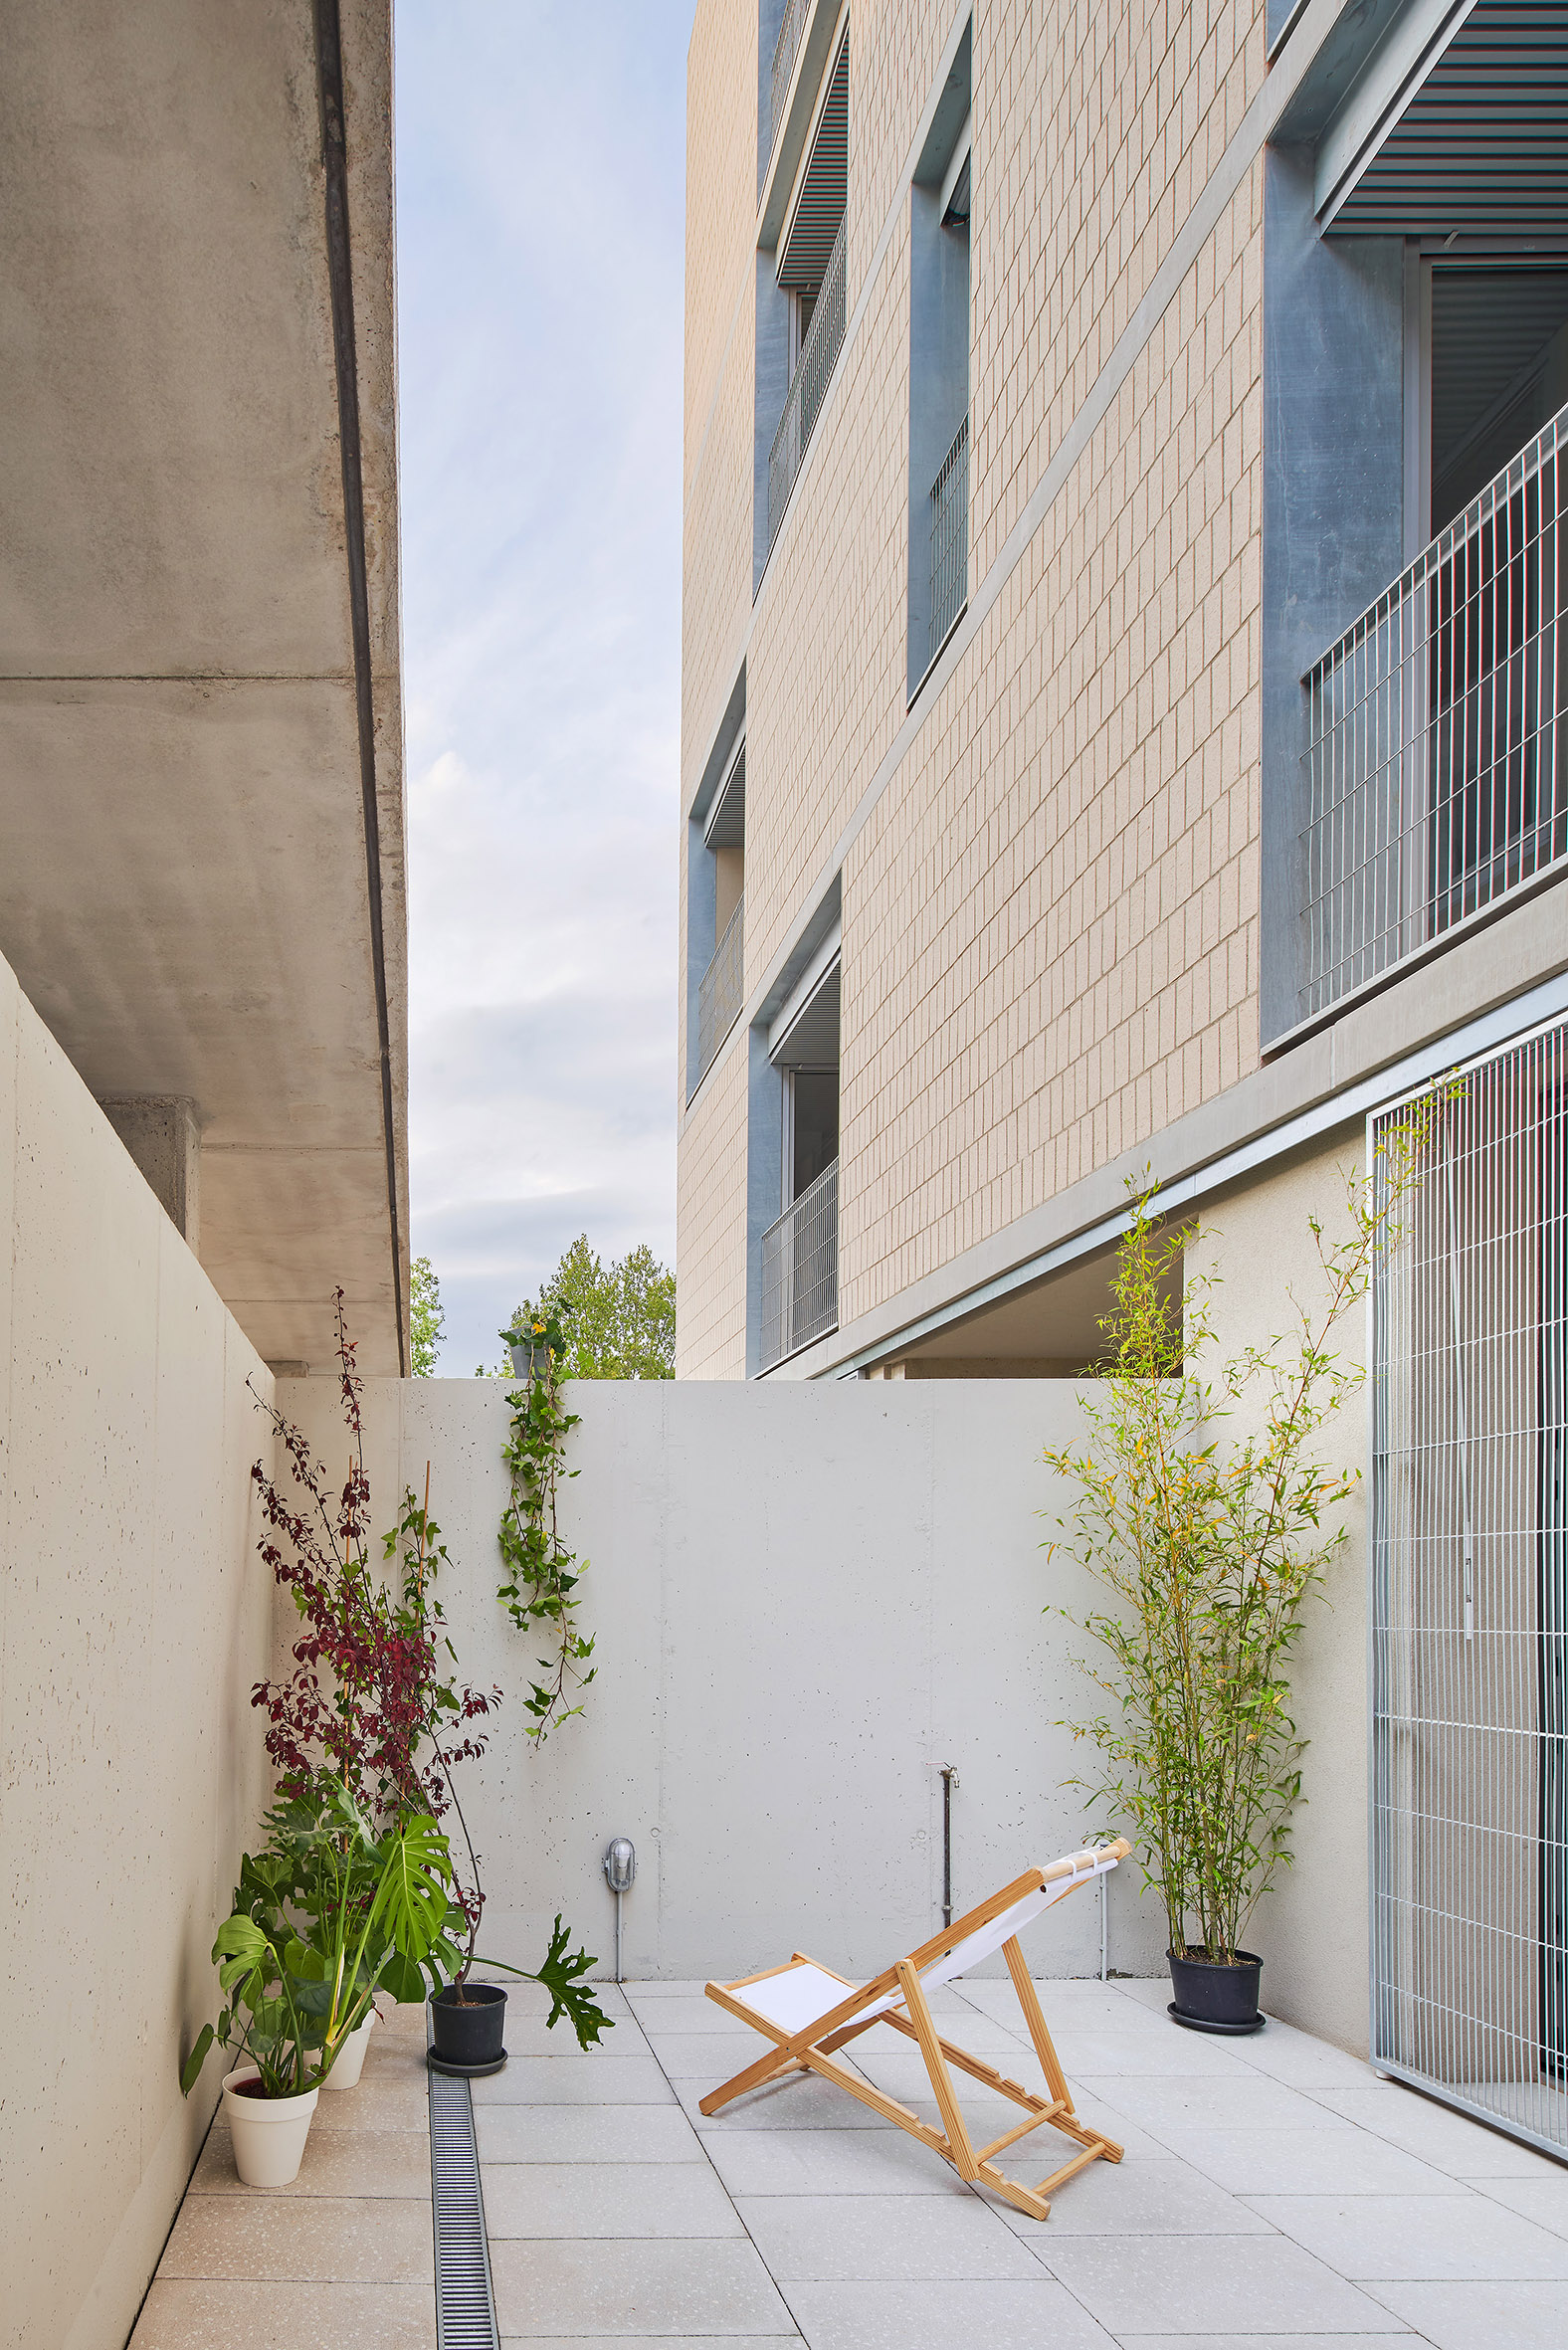 54 Viviendas Sociales en Bon Pastor, un proyecto llevado a cabo por el estudio Peris+Toral Arquitectes y Jaime Pastor en Barcelona. Detalle patio interior